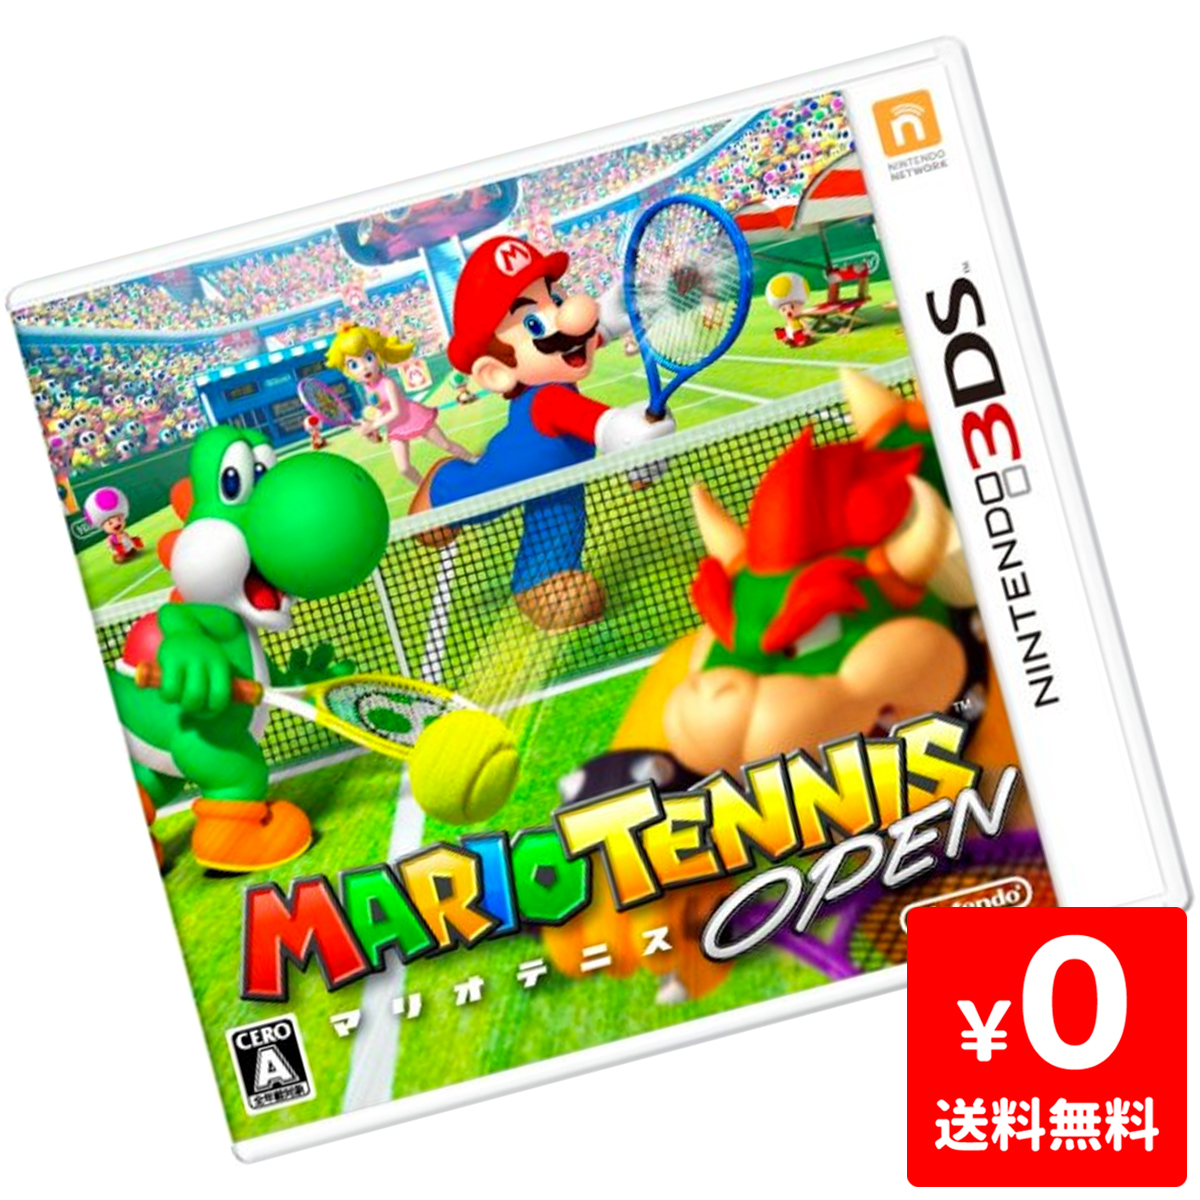 楽天市場 3ds ニンテンドー3ds Mario Tennis Open マリオテニスオープン ソフト ケースあり Nintendo 任天堂 ニンテンドー 中古 Iimo リユース店